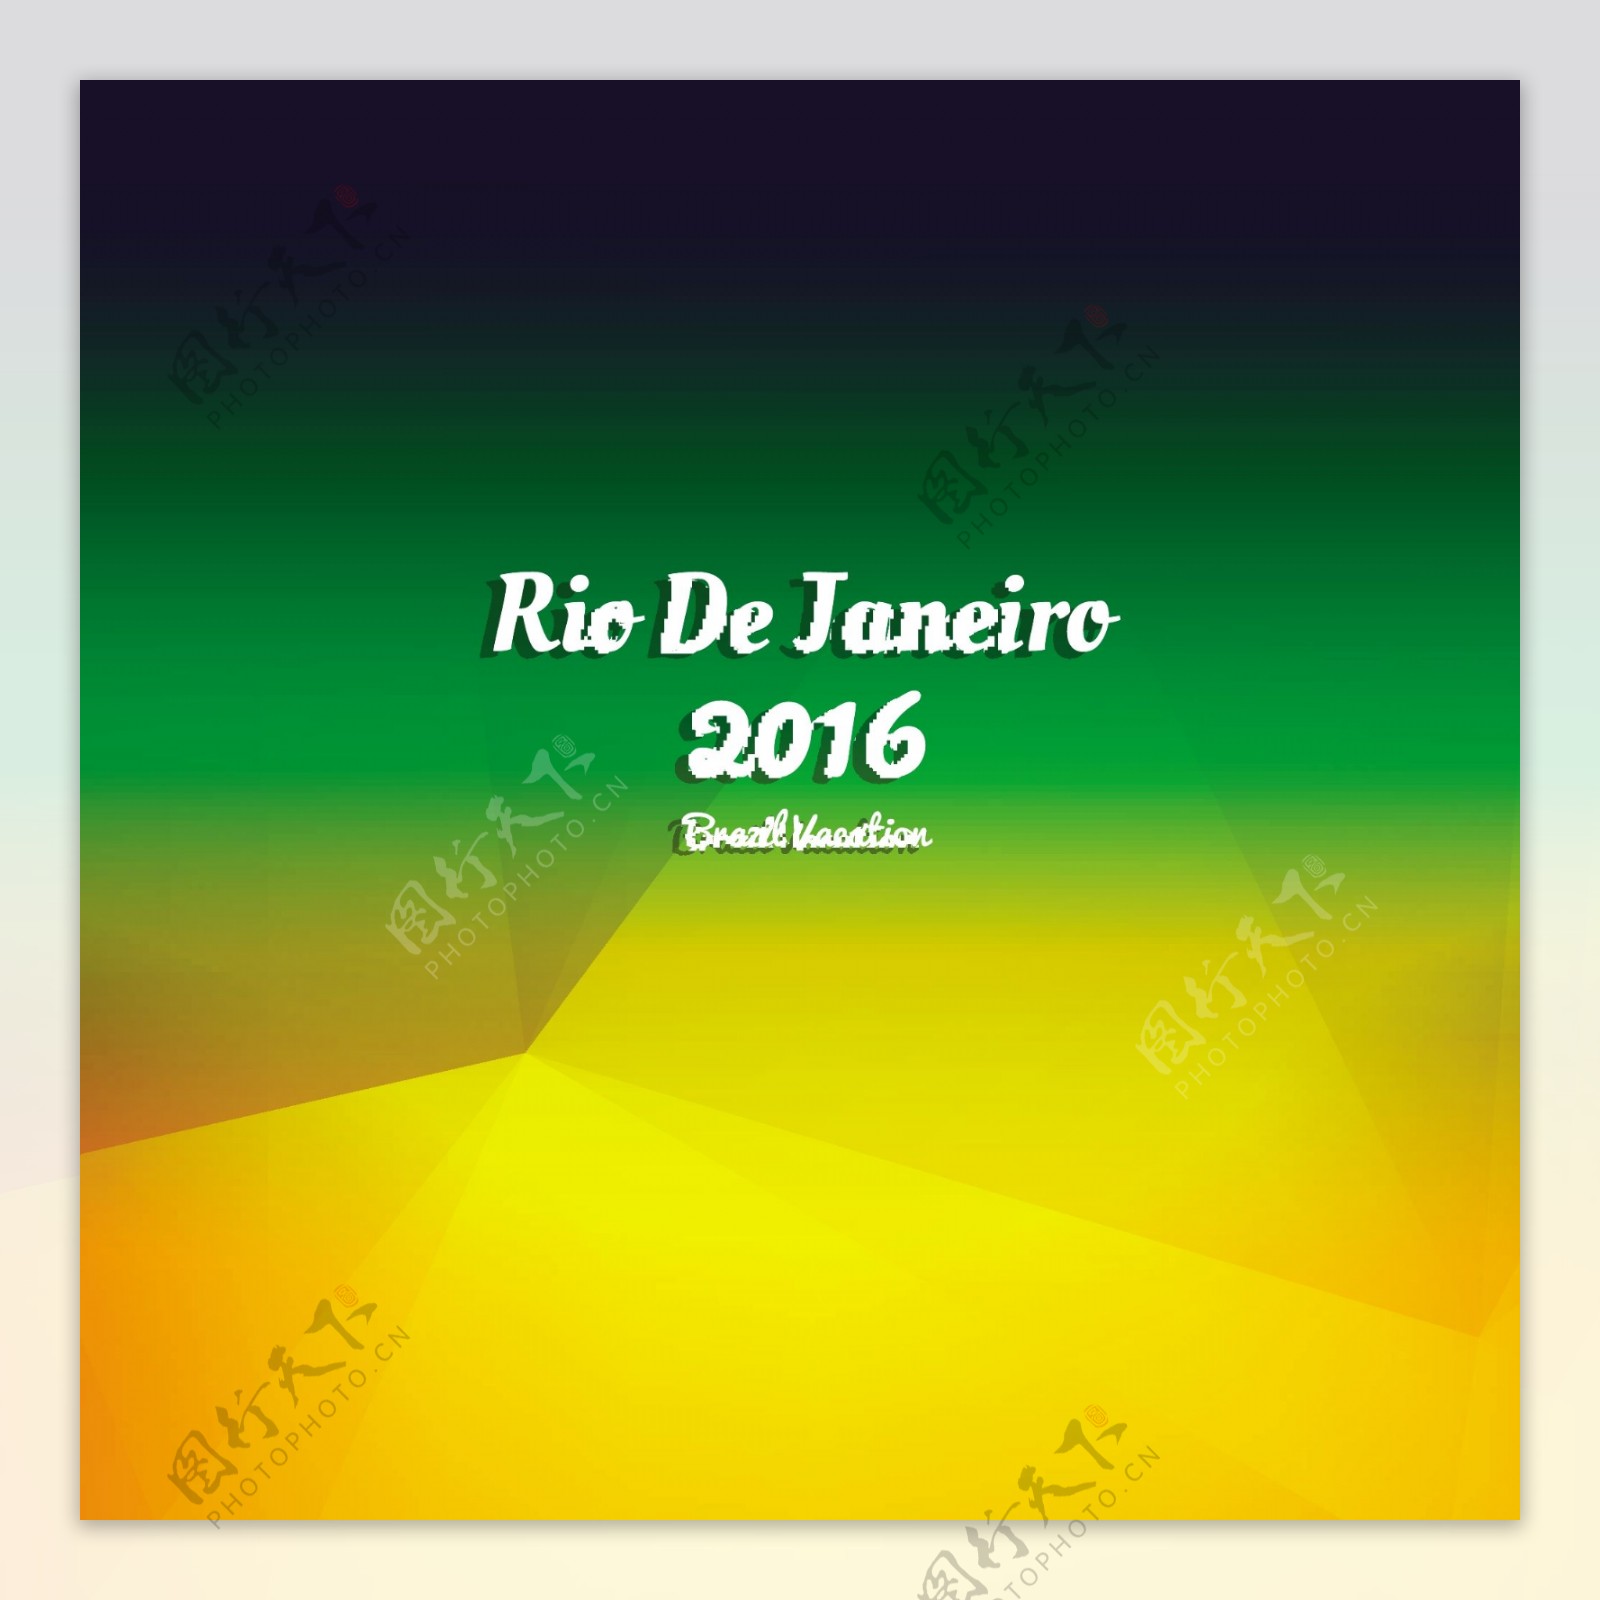 多边形里约热内卢2016背景